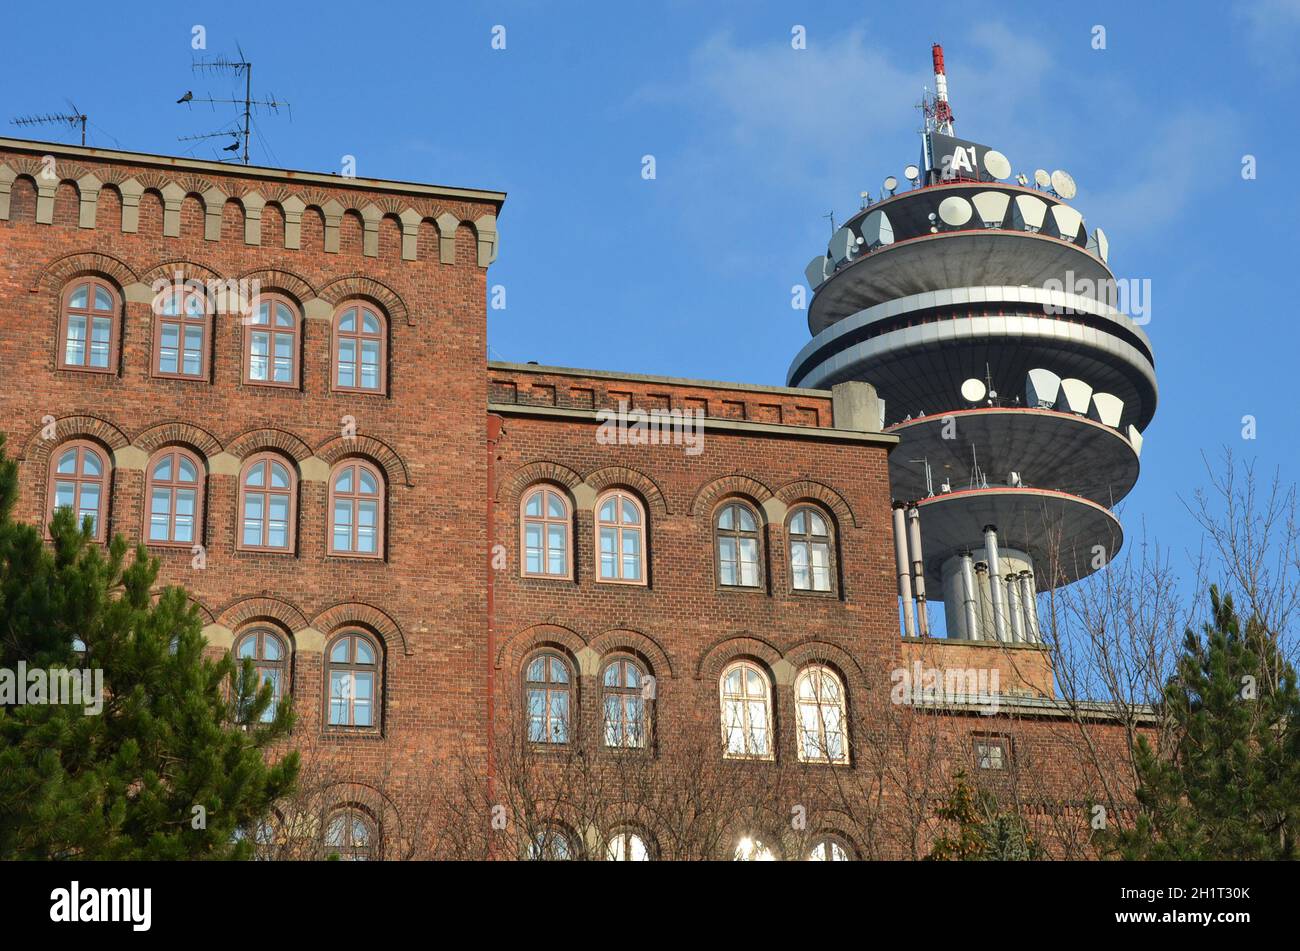 Das Arsenal in Wien ist ein ehemals militärischer Gebäudekomplex im Südosten der Stadt, im 3. Wiener Gemeindebezirk gelegen. - The Arsenal in Vienna i Stock Photo